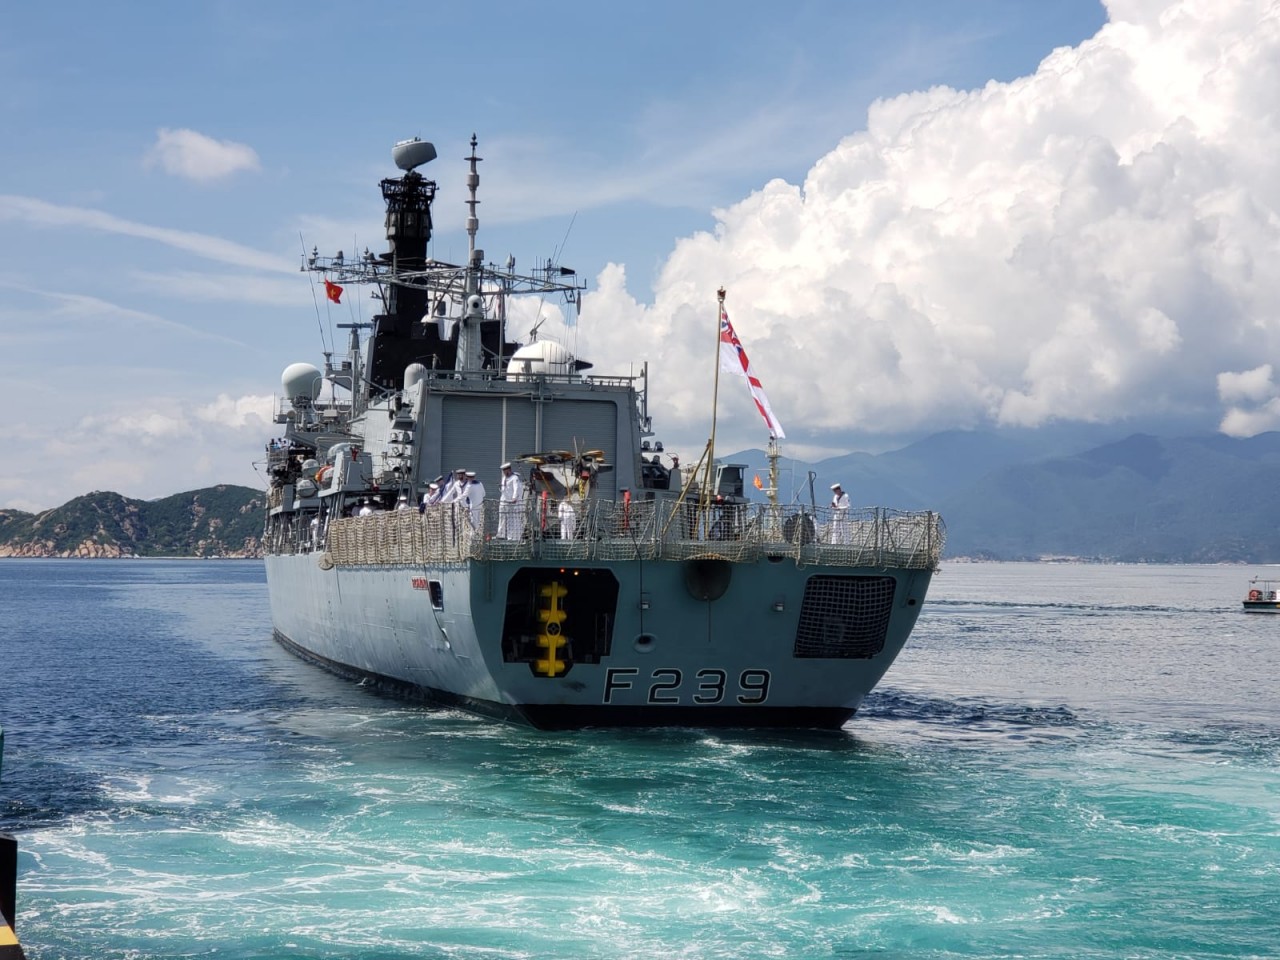 Chuyến thăm của HMS Richmond là một phần trong chiến dịch của Hải quân Hoàng gia Anh năm 2021 tại khu vực Ấn Độ Dương - Thái Bình Dương, là một phần trong cam kết của Vương quốc Anh đối với việc xây dựng hòa bình, an ninh hàng hải và thịnh vượng trong khu vực.